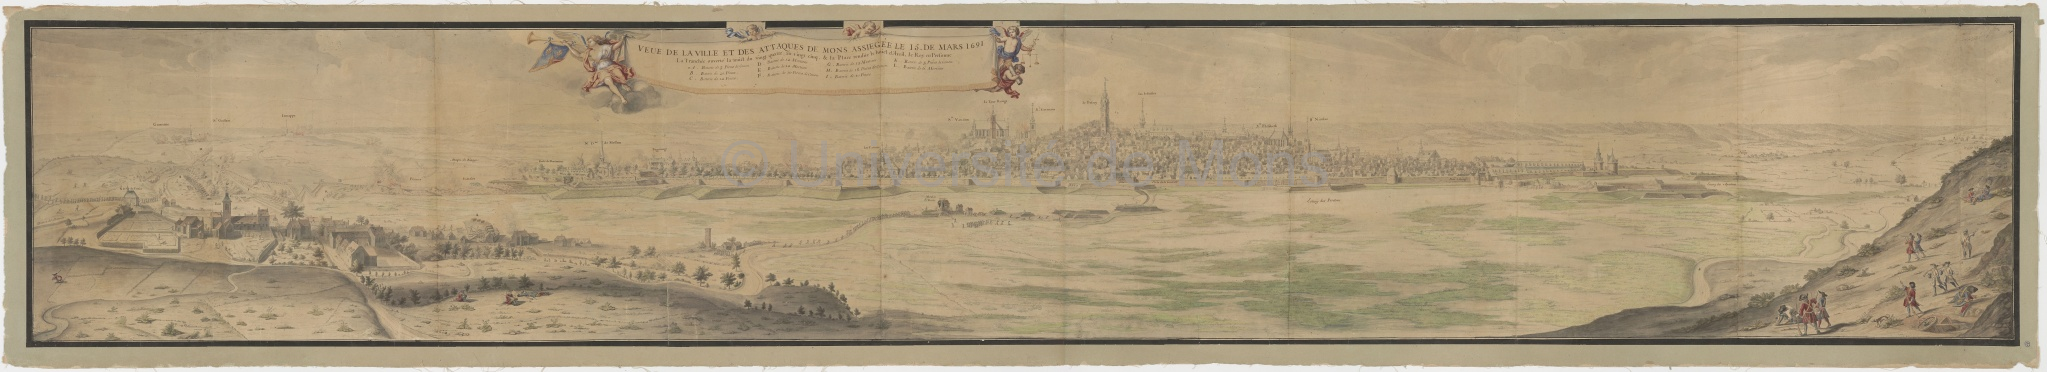 Veue [sic] de la ville de Mons et des attaques de Mons assiegée le 15 de mars 1691